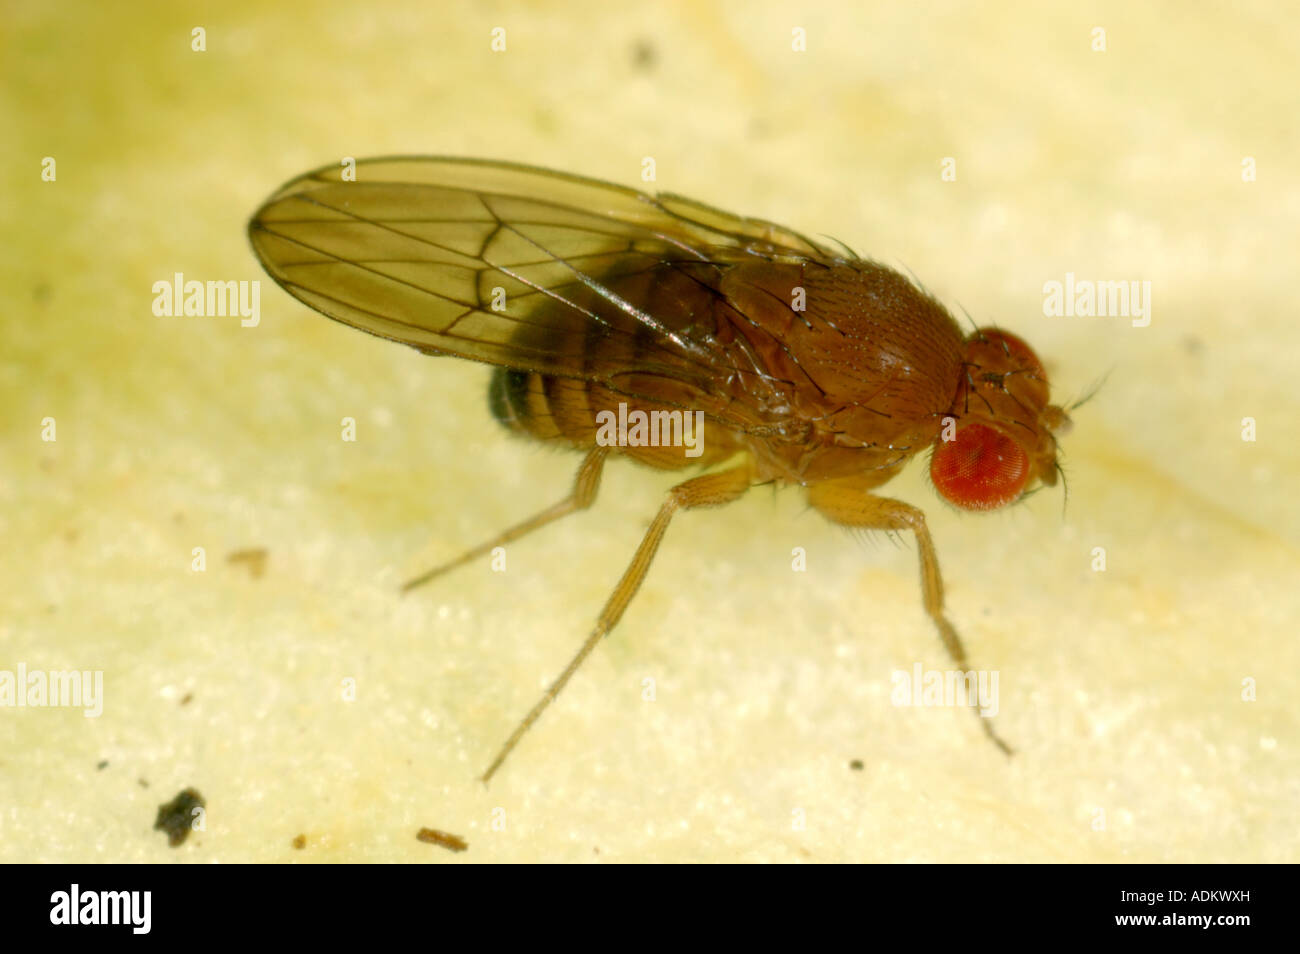 Nach Taufliege Drosophila sp eine Gattung für Experimente verwendet wegen des schnellen Zucht Zyklus Stockfoto